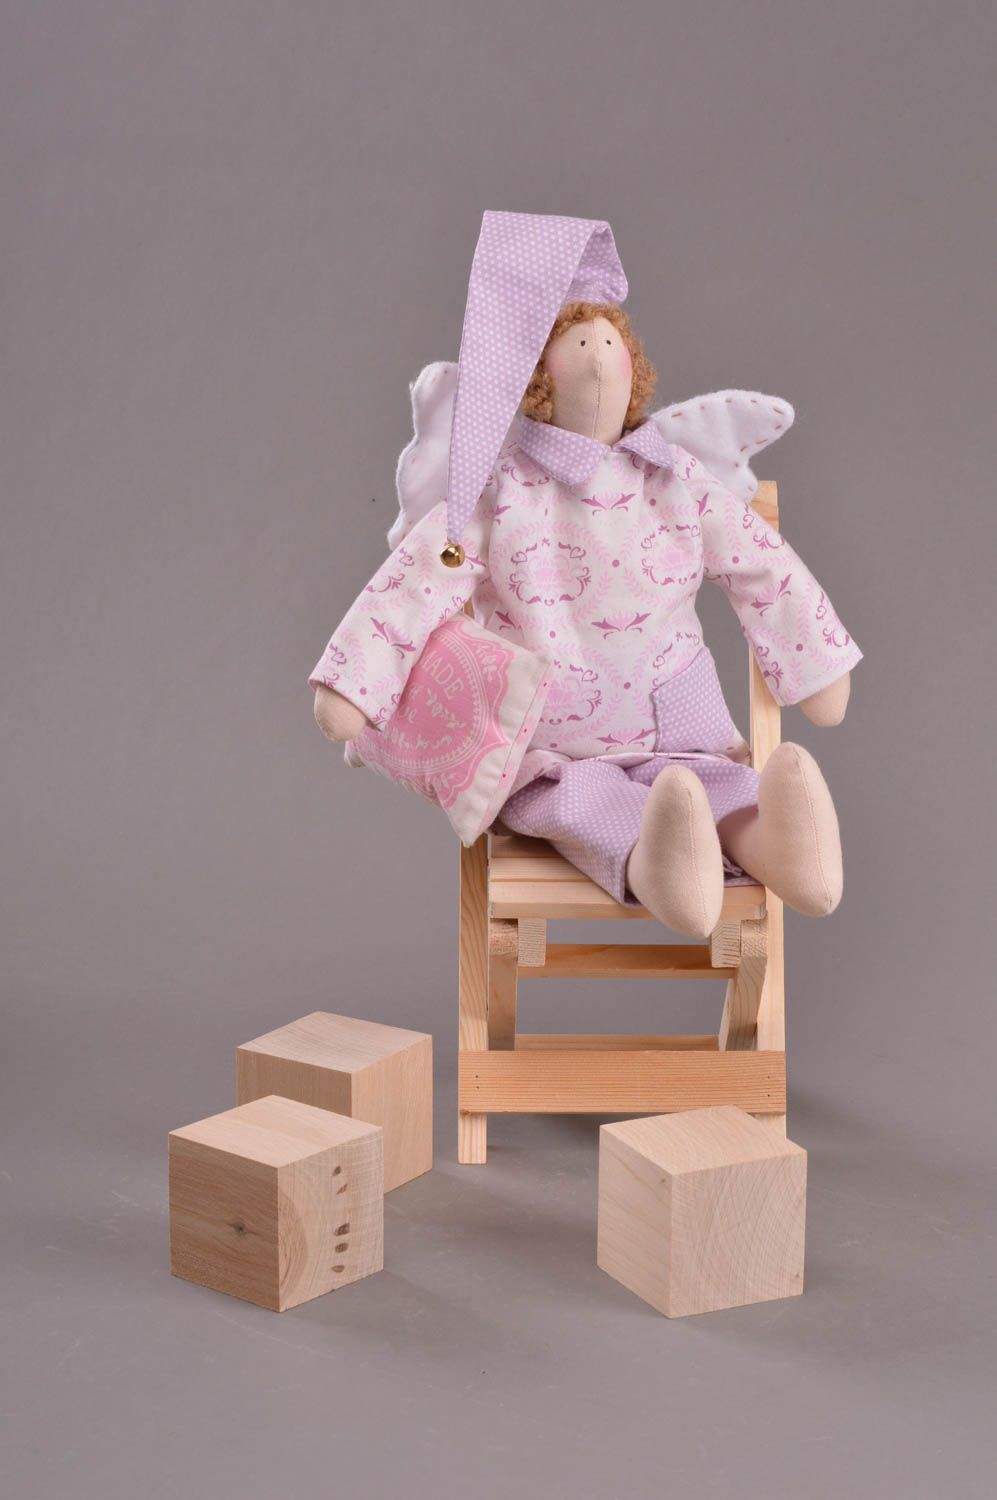 Petite poupée ange faite main en coton et feutre originale en pyjama lilas photo 1